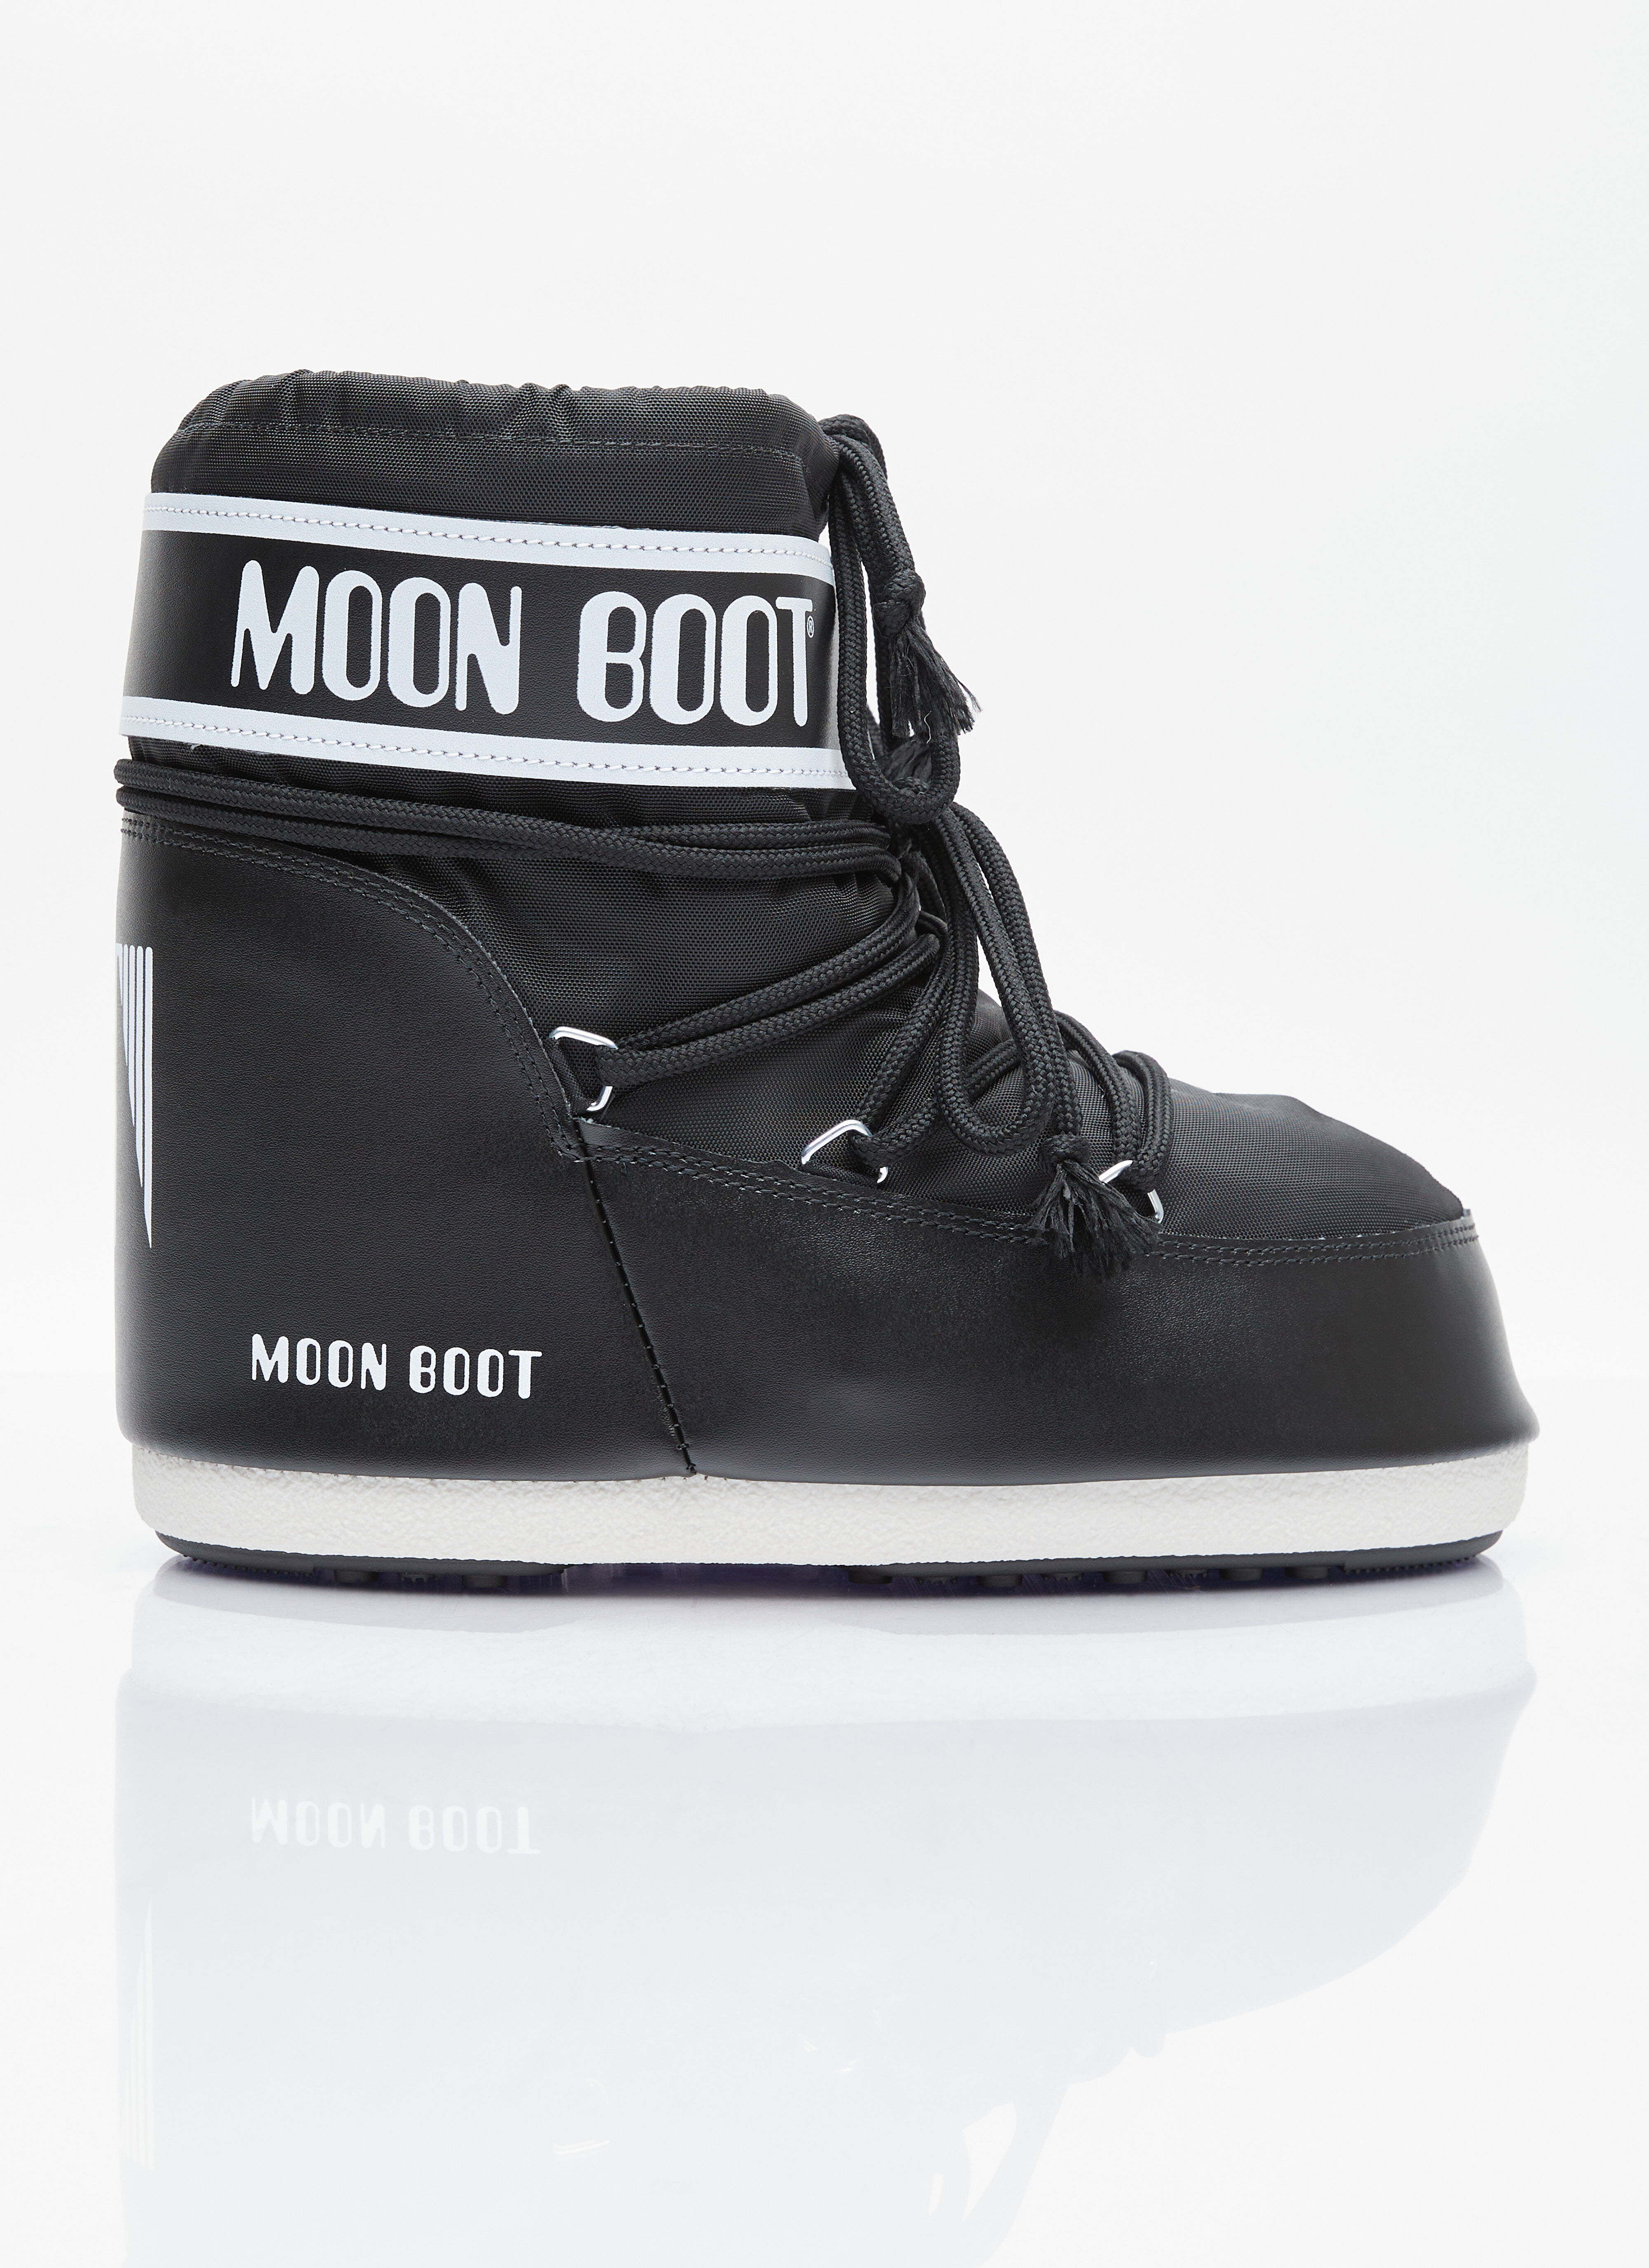 Moon Boot アイコンローナイロンブーツ ブラック mnb0355001